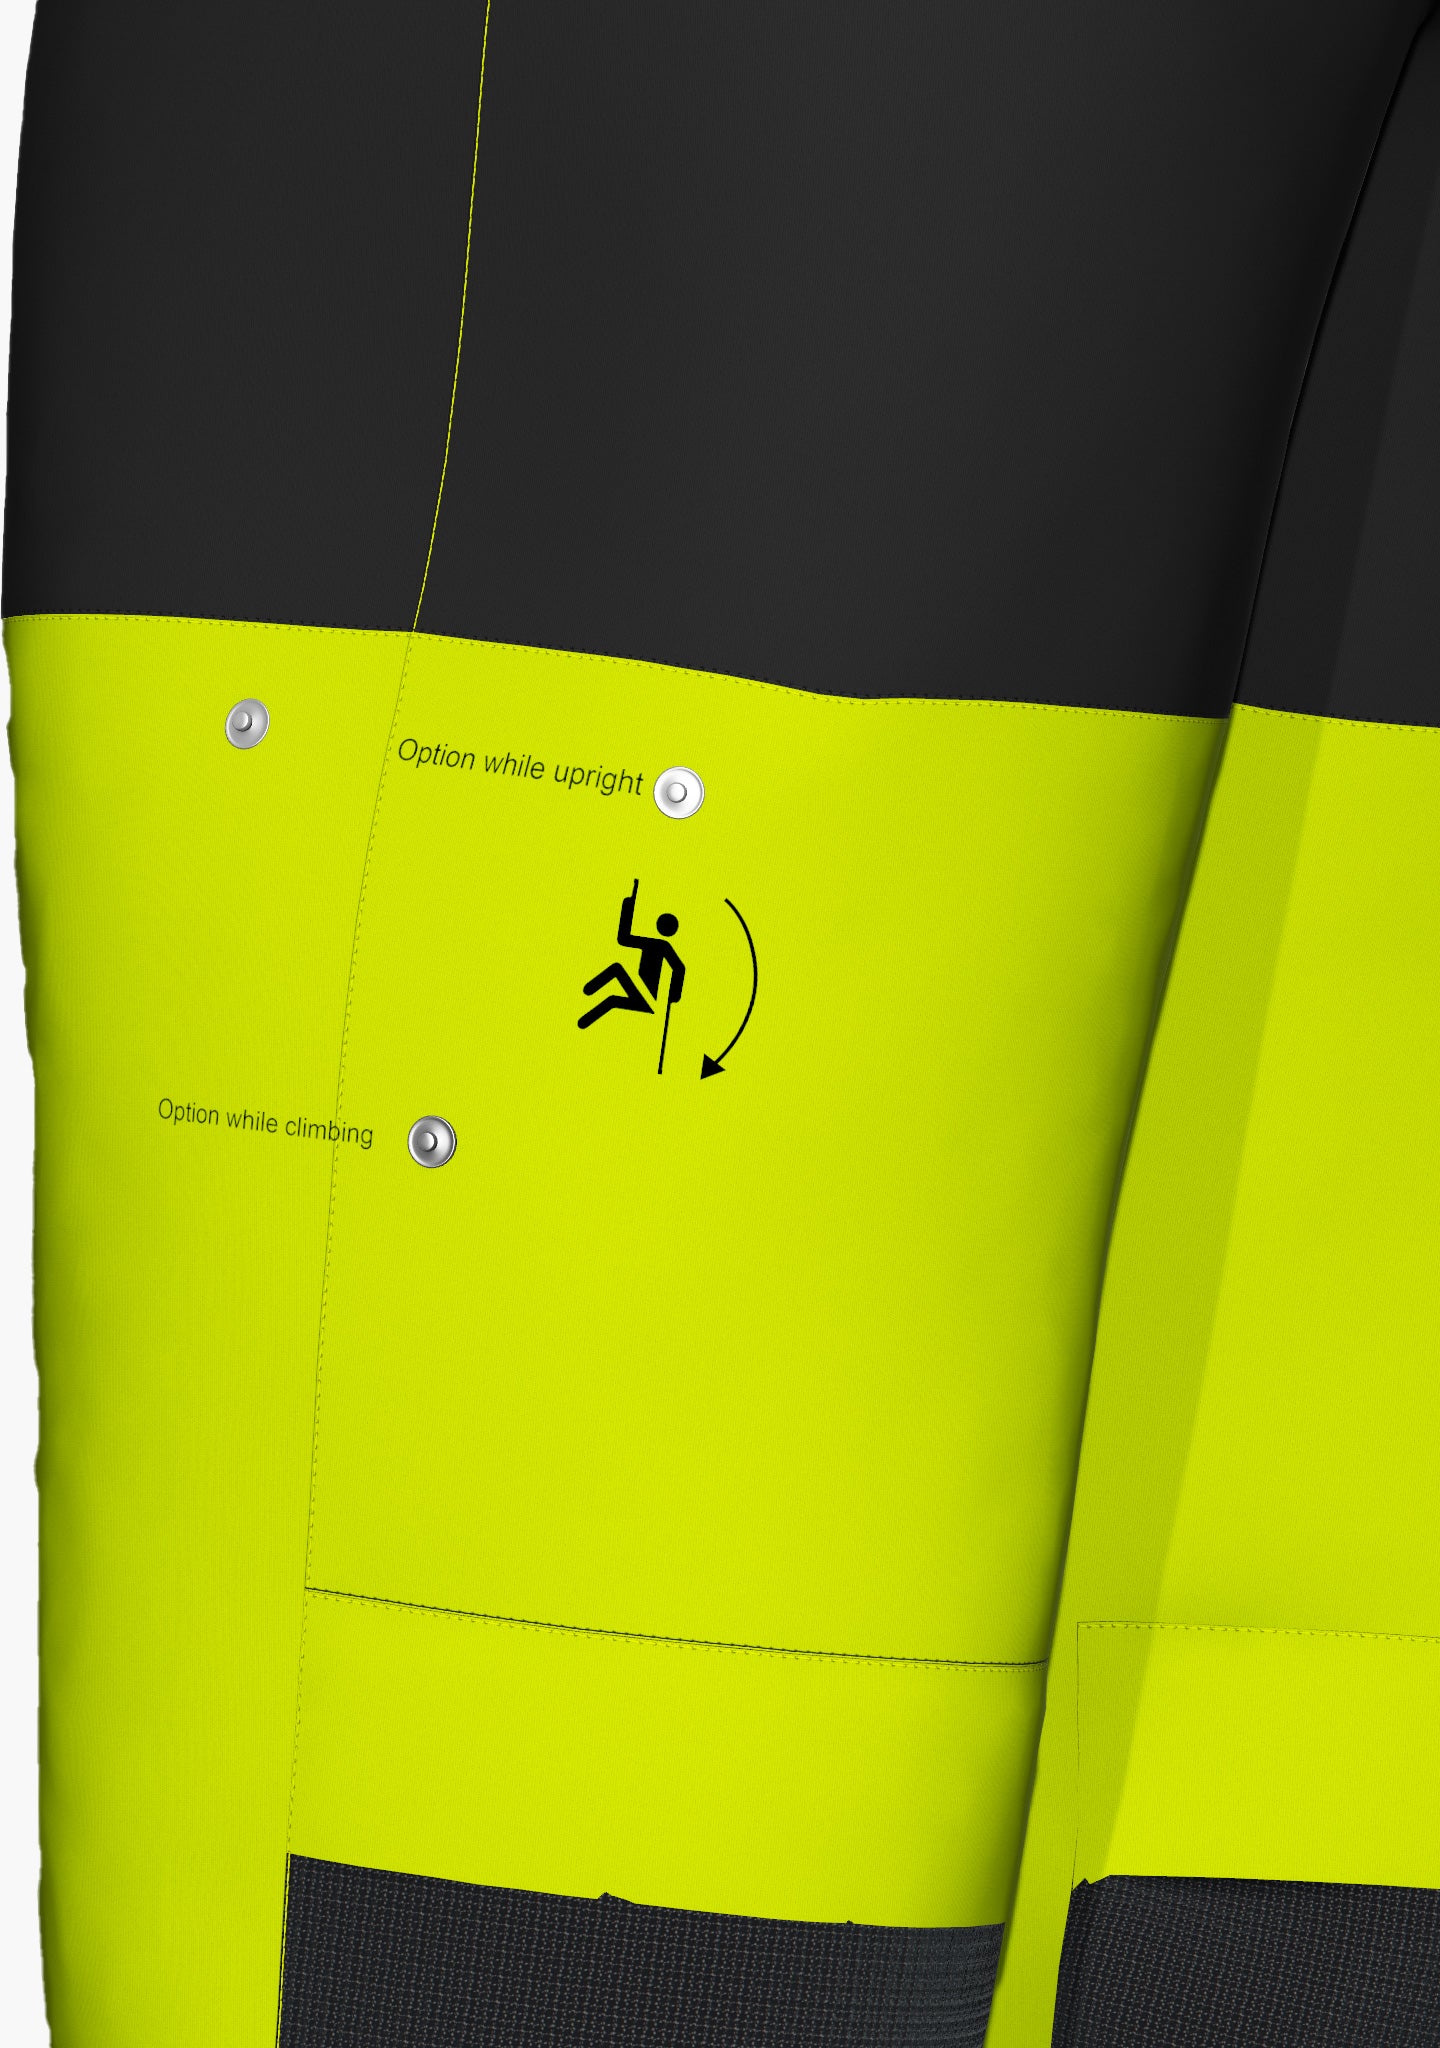 Click & Climb Taschenlösung mit LOXX  Knöpfen, Ansicht ohne aufgesetzte TascheHier ist eine Funktionshose in neongelb und schwarz abgebildet, die für wärmere Arbeitstage im Klettergurt geeignet ist und sich mit ihren abnehmbaren Kniepolstertaschen, den Click & Climb Hosentaschen und den Reißverschlüssen am Beinende der Seilzugangstechnik perfekt anpasst. (Ansicht Click & Climb)